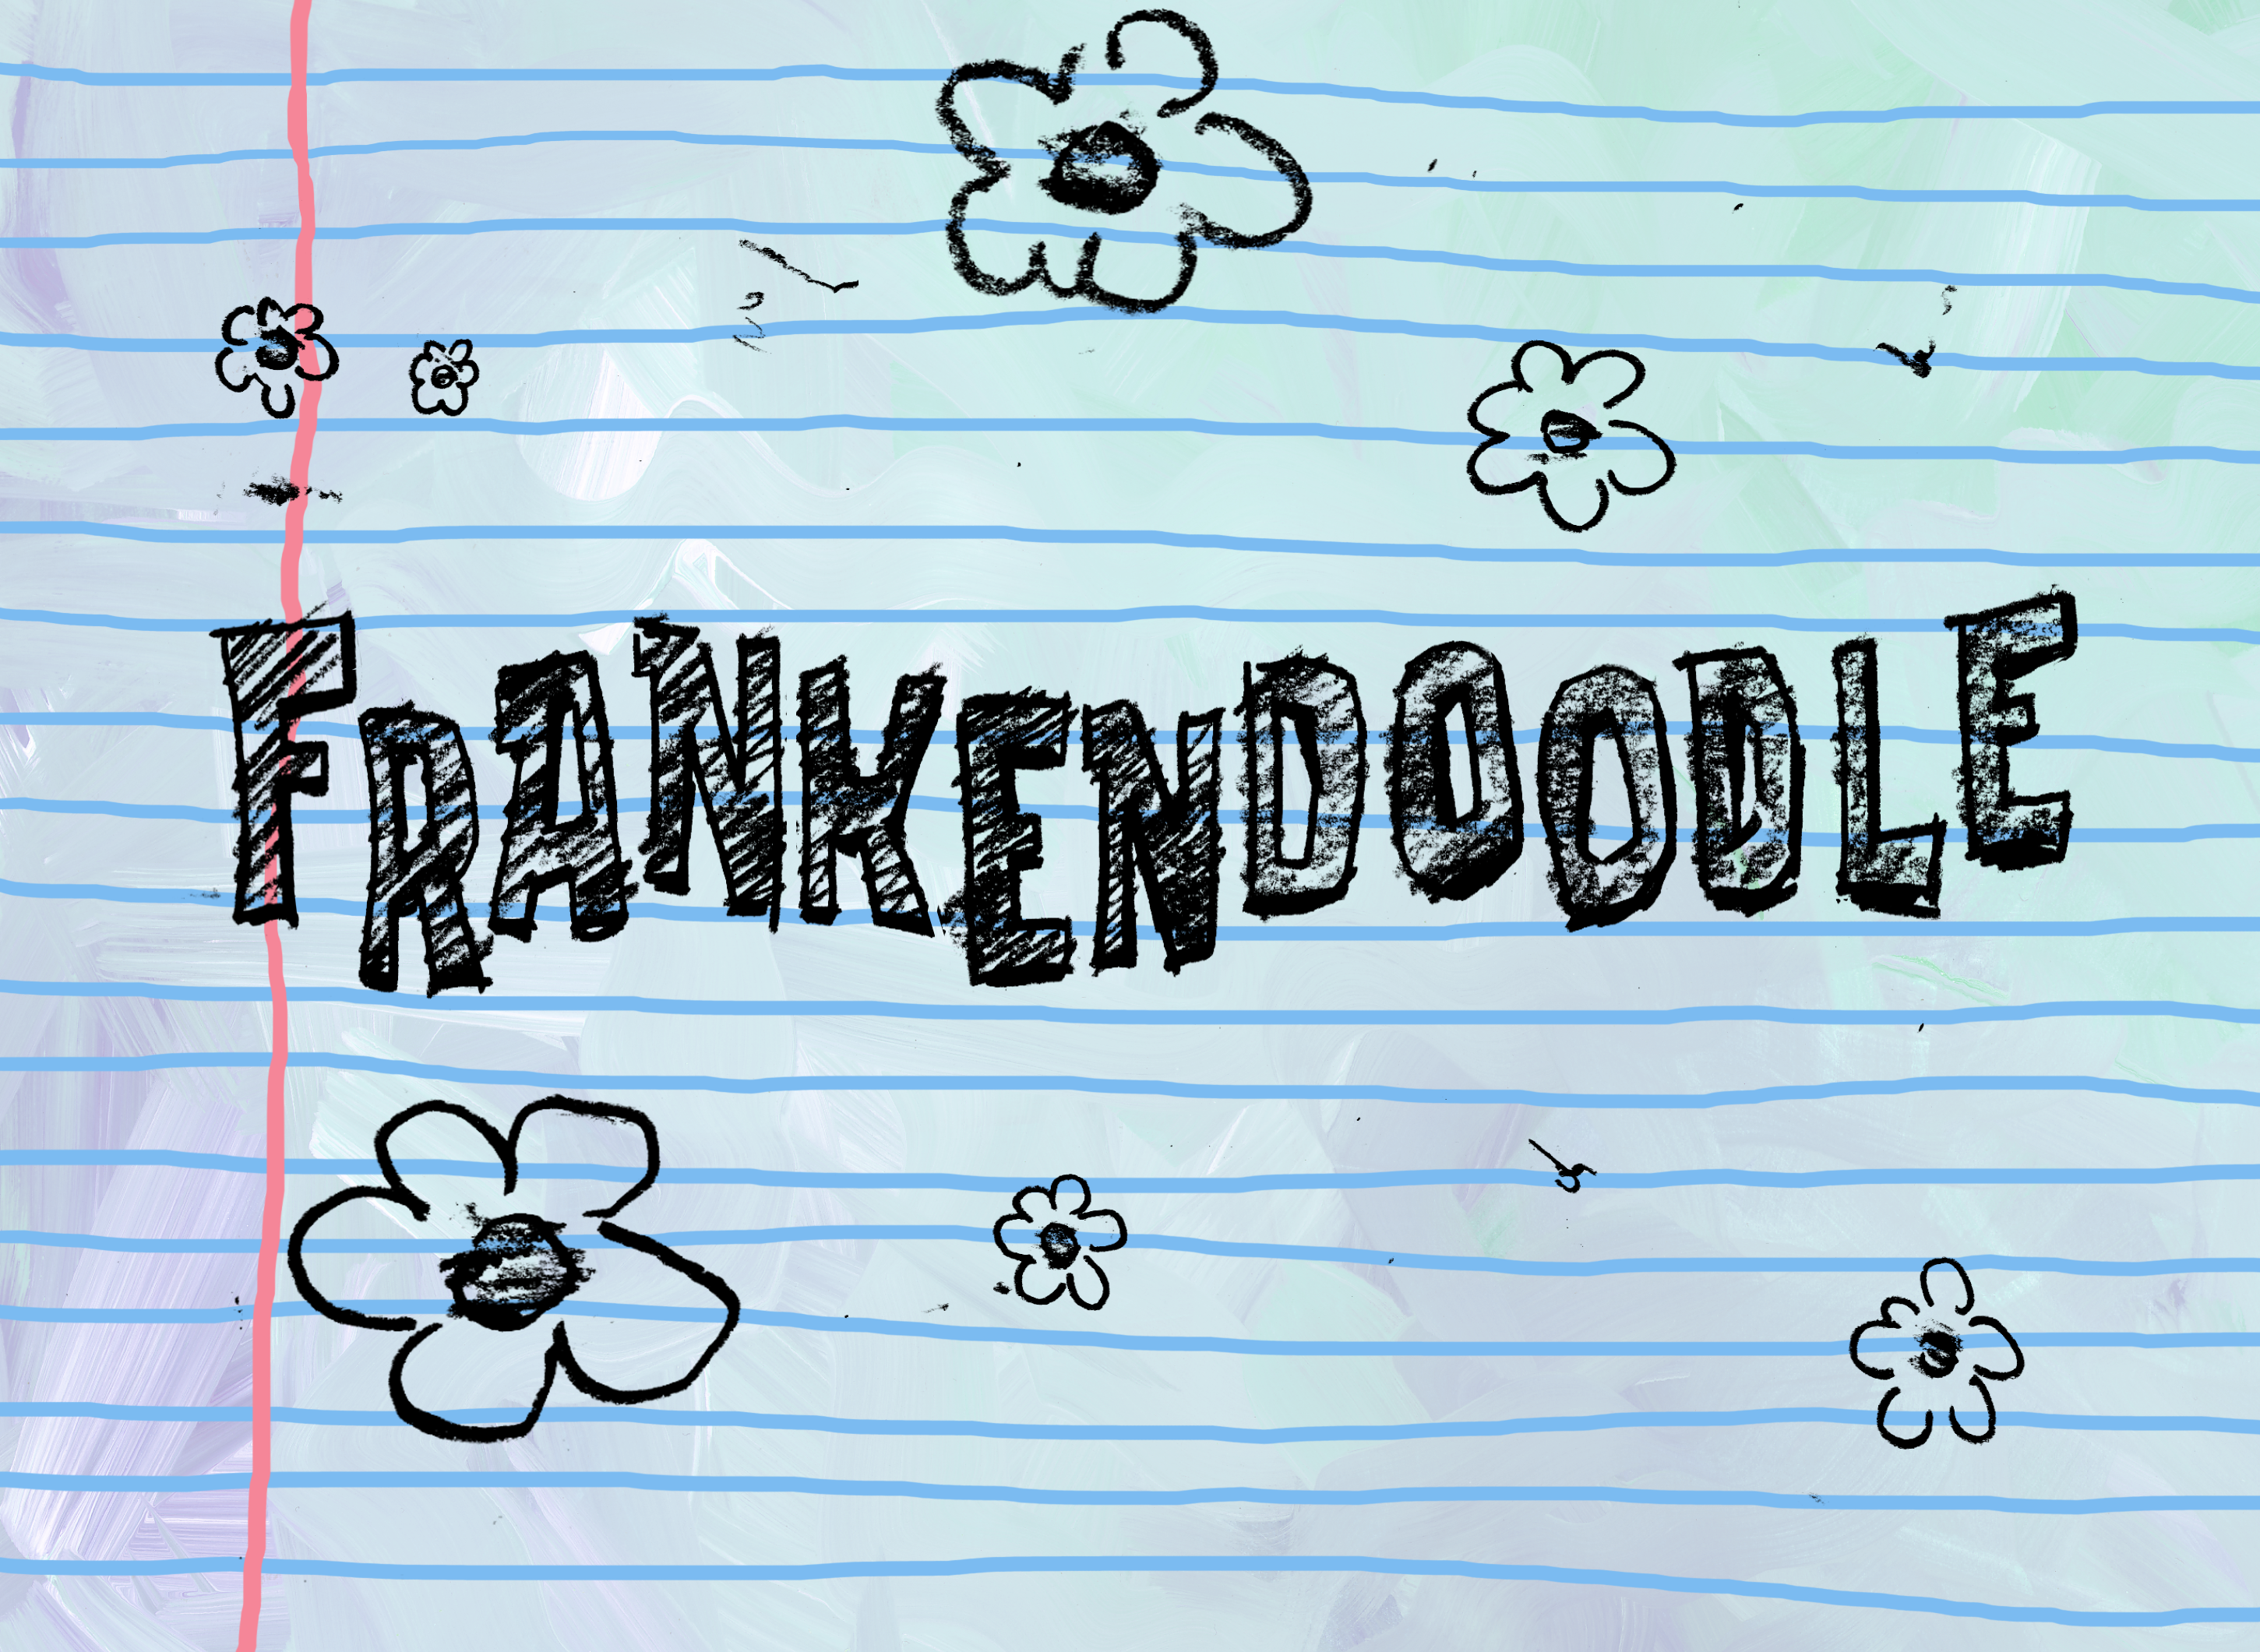 spongebob drawing in pencil episode